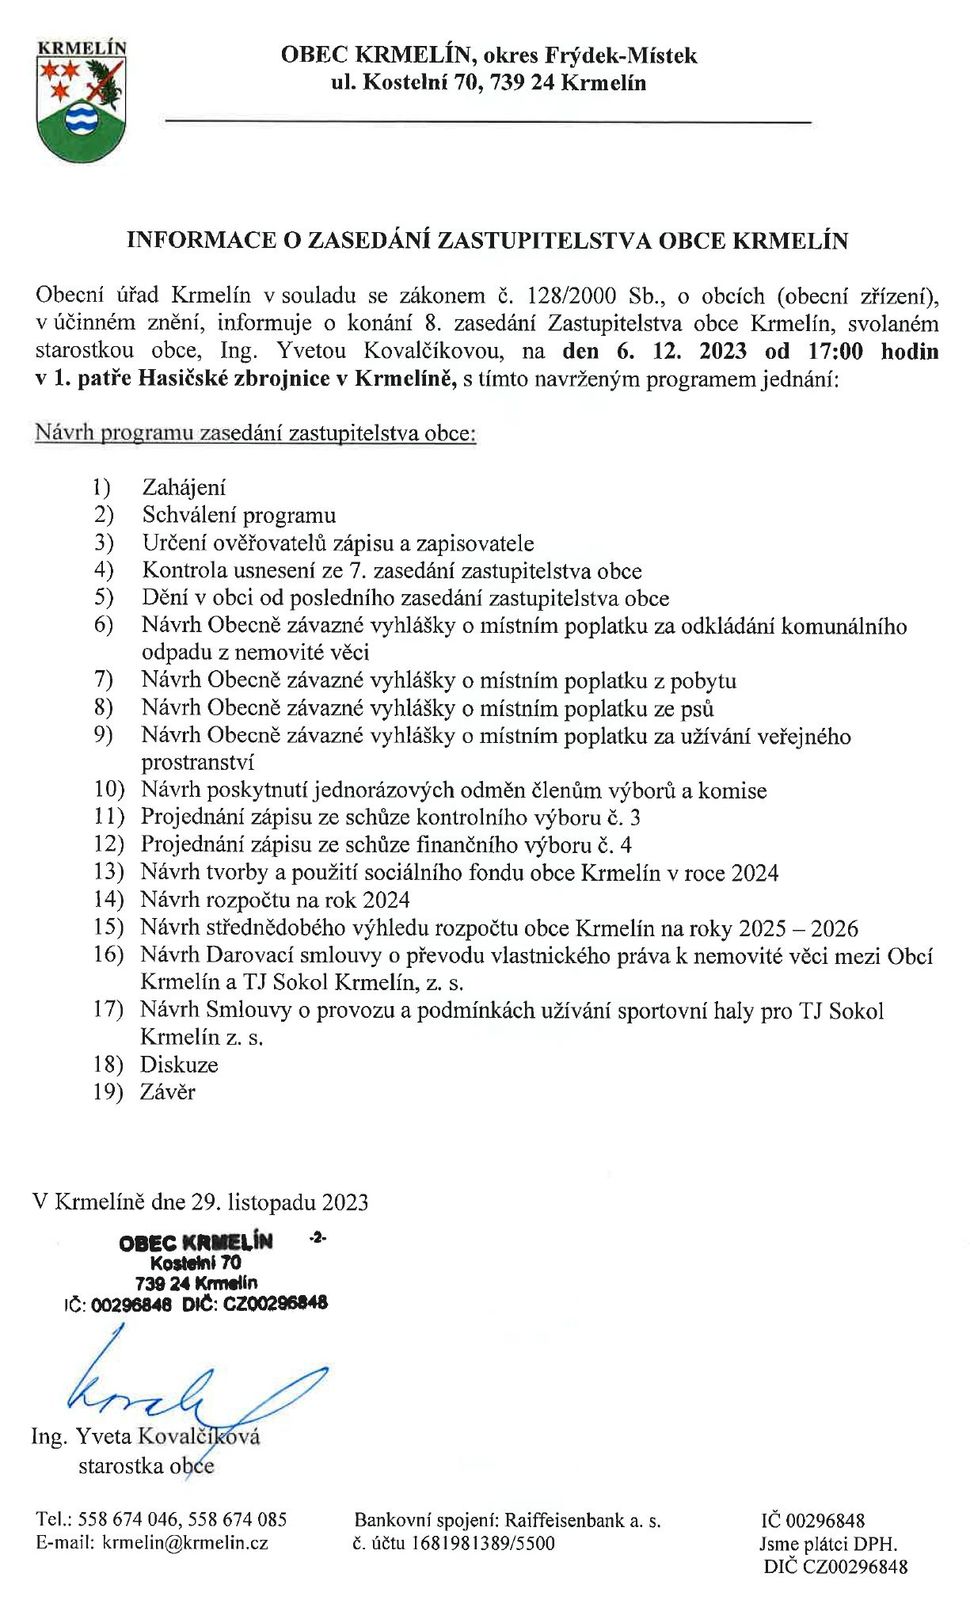  Smazat Pozvání na 8. zasedání zastupitelstva obce Krmelín - středa 6. prosince 2023